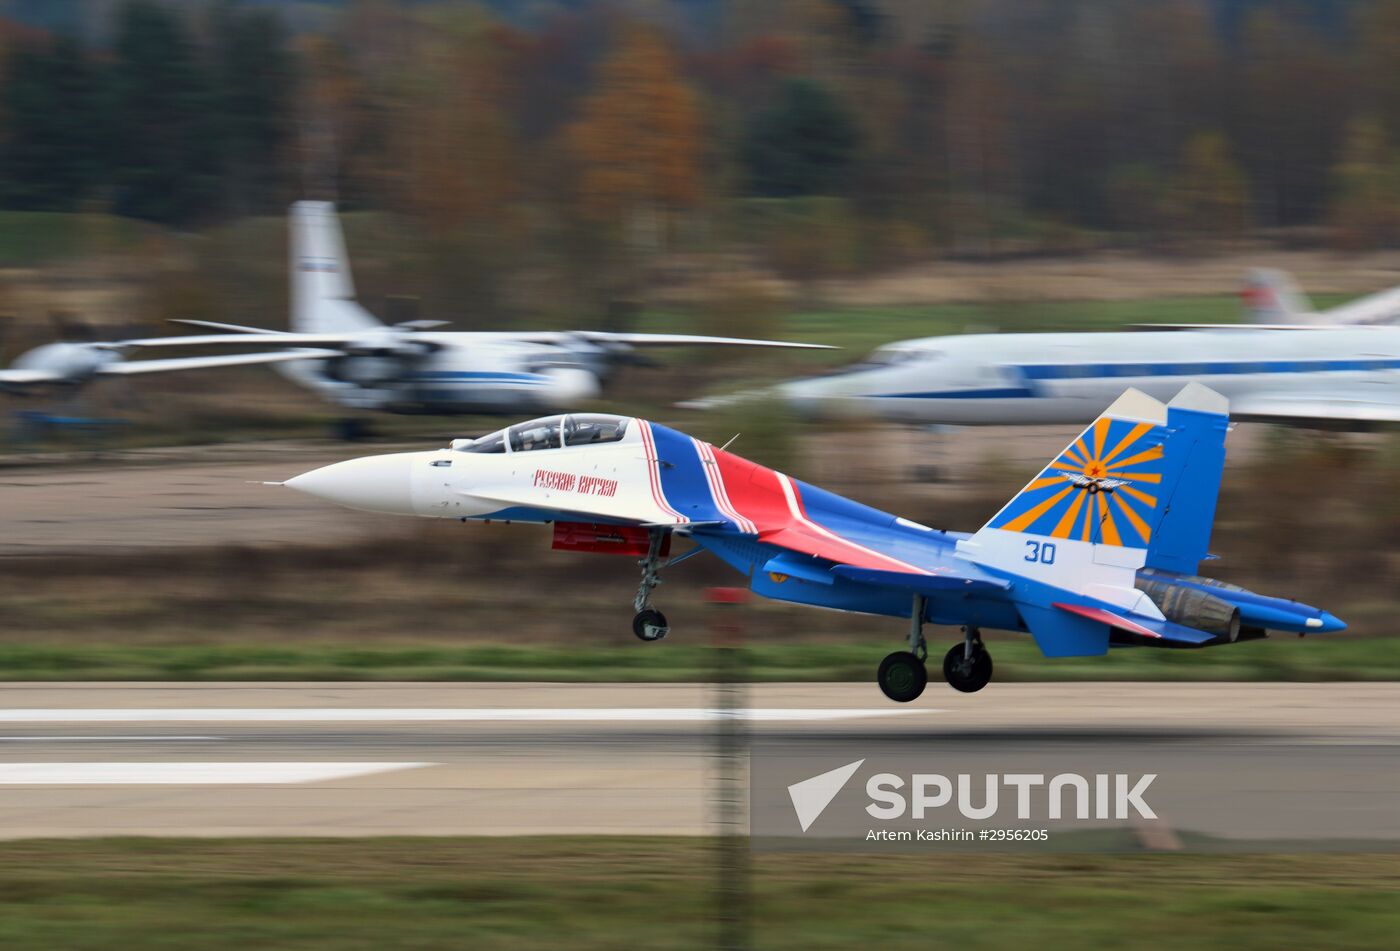 Russkiye Vityazi aerobatics team get first four Sukhoi 30SM fighter jets